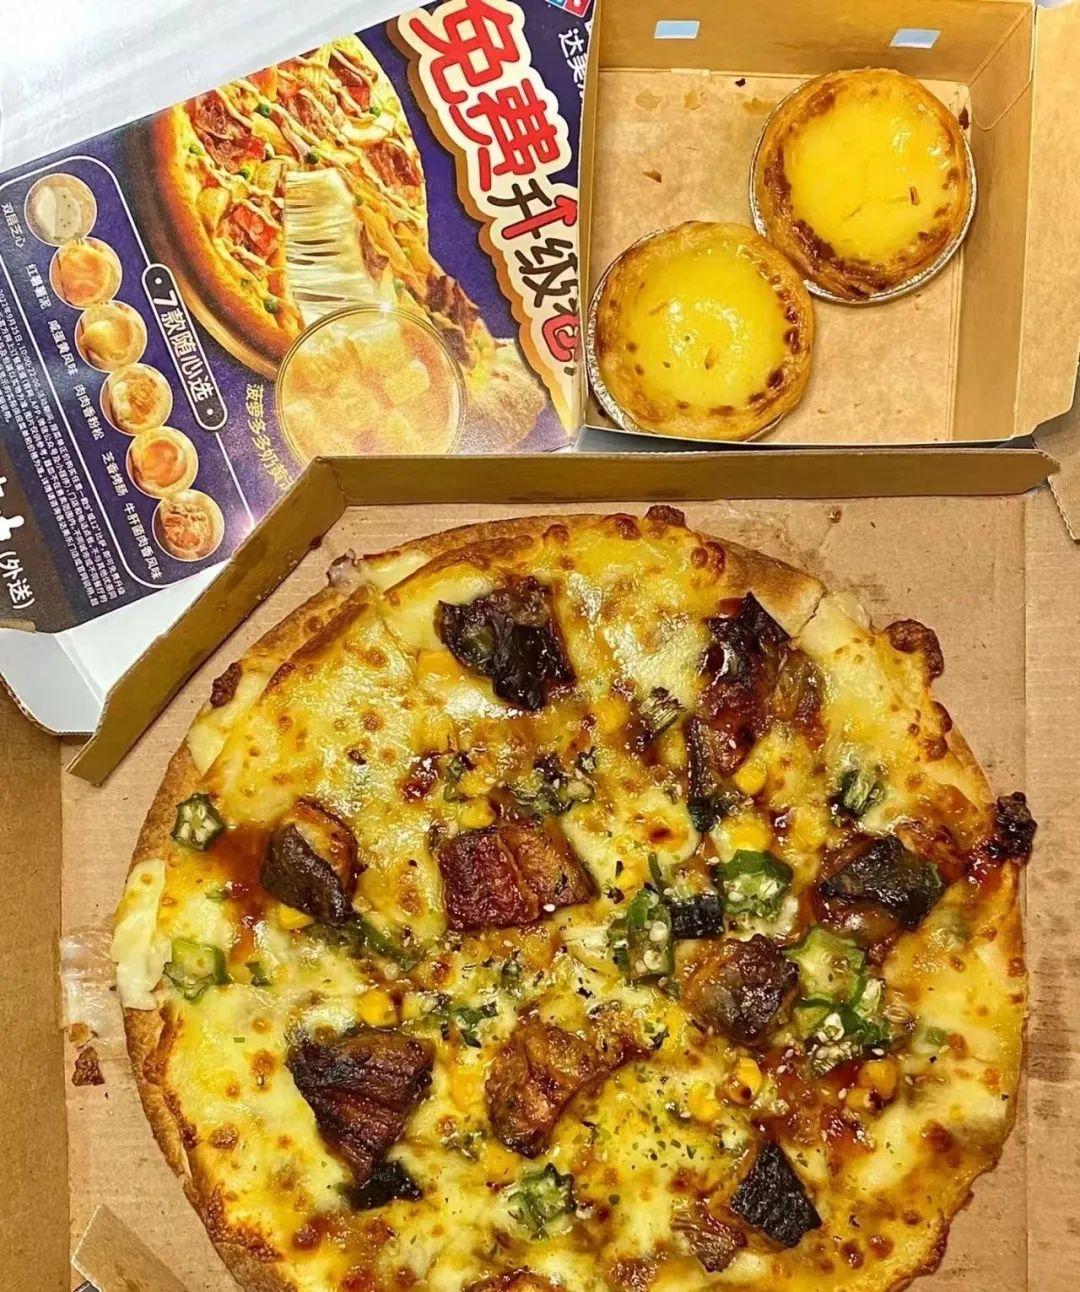 达美乐披萨哪款最好吃知乎_达美乐披萨哪款最好吃_达美乐披萨口味排名